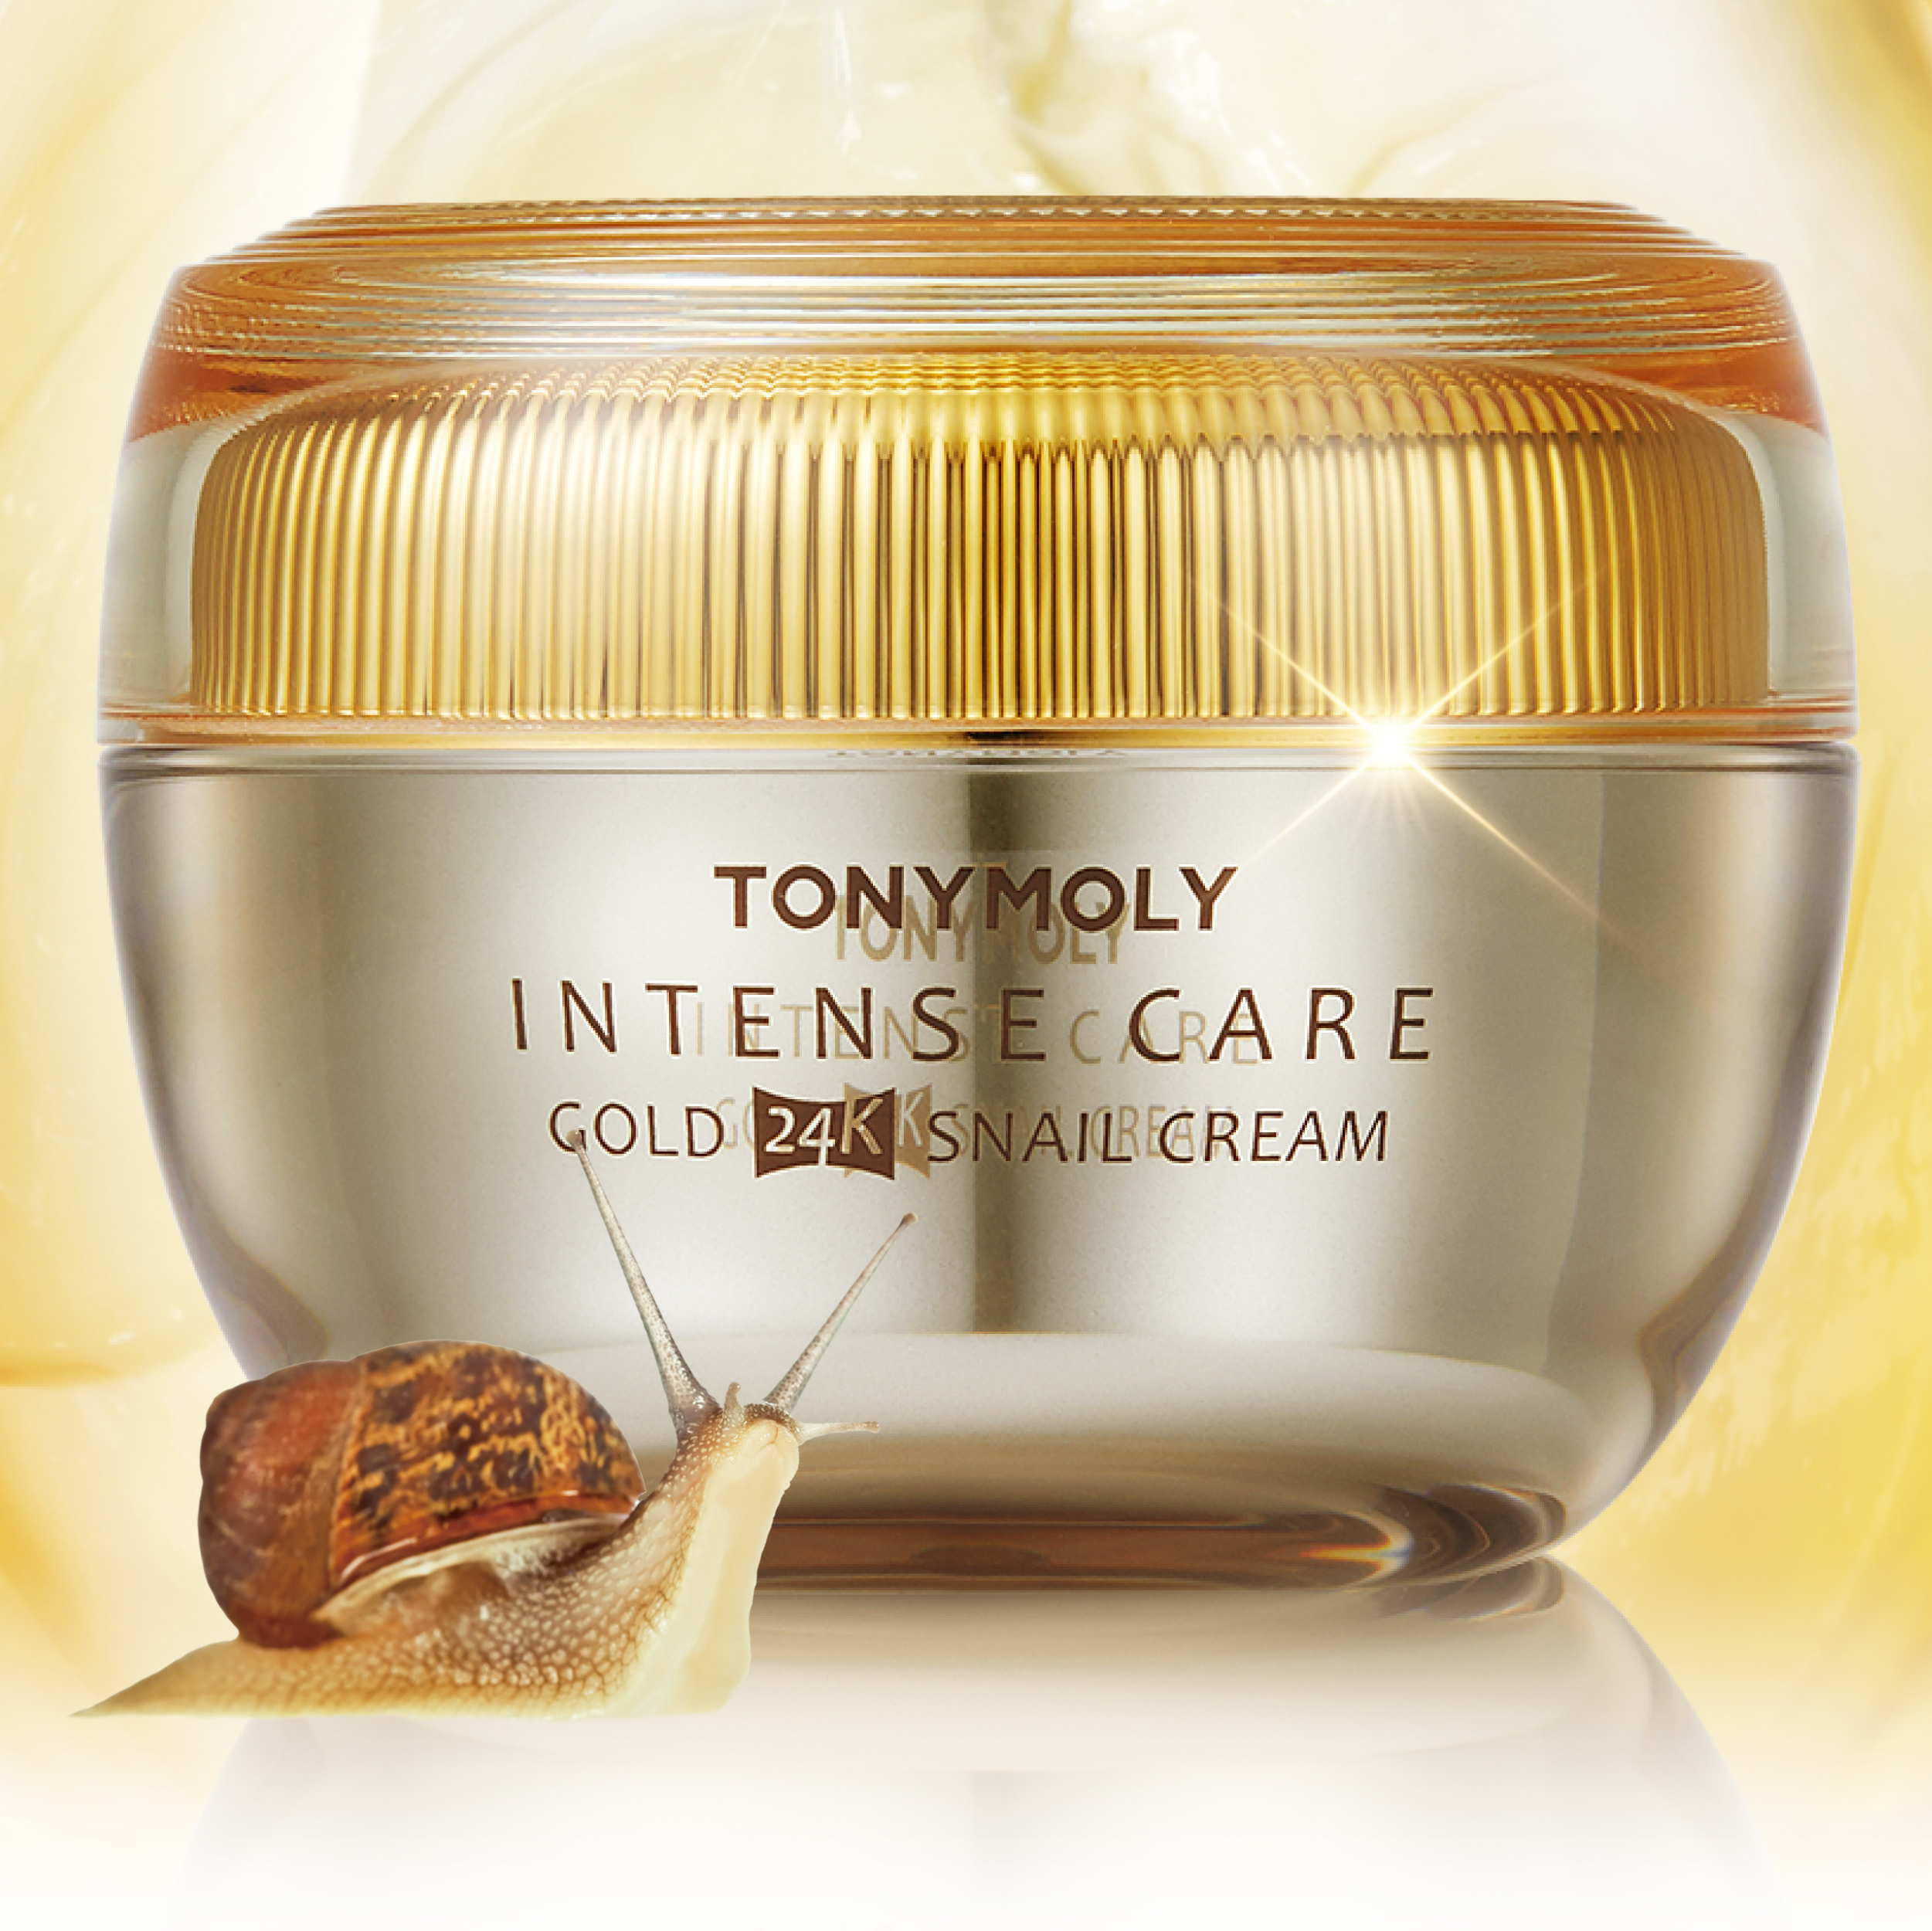 Купить крем 45. Tony Moly intense Care Gold Snail Cream крем для лица. Gold Snail Intensive Care Cream. 3w Clinic Gold Snail Intensive Care Cream. Крем для лица Корея в золотистой бутылке.